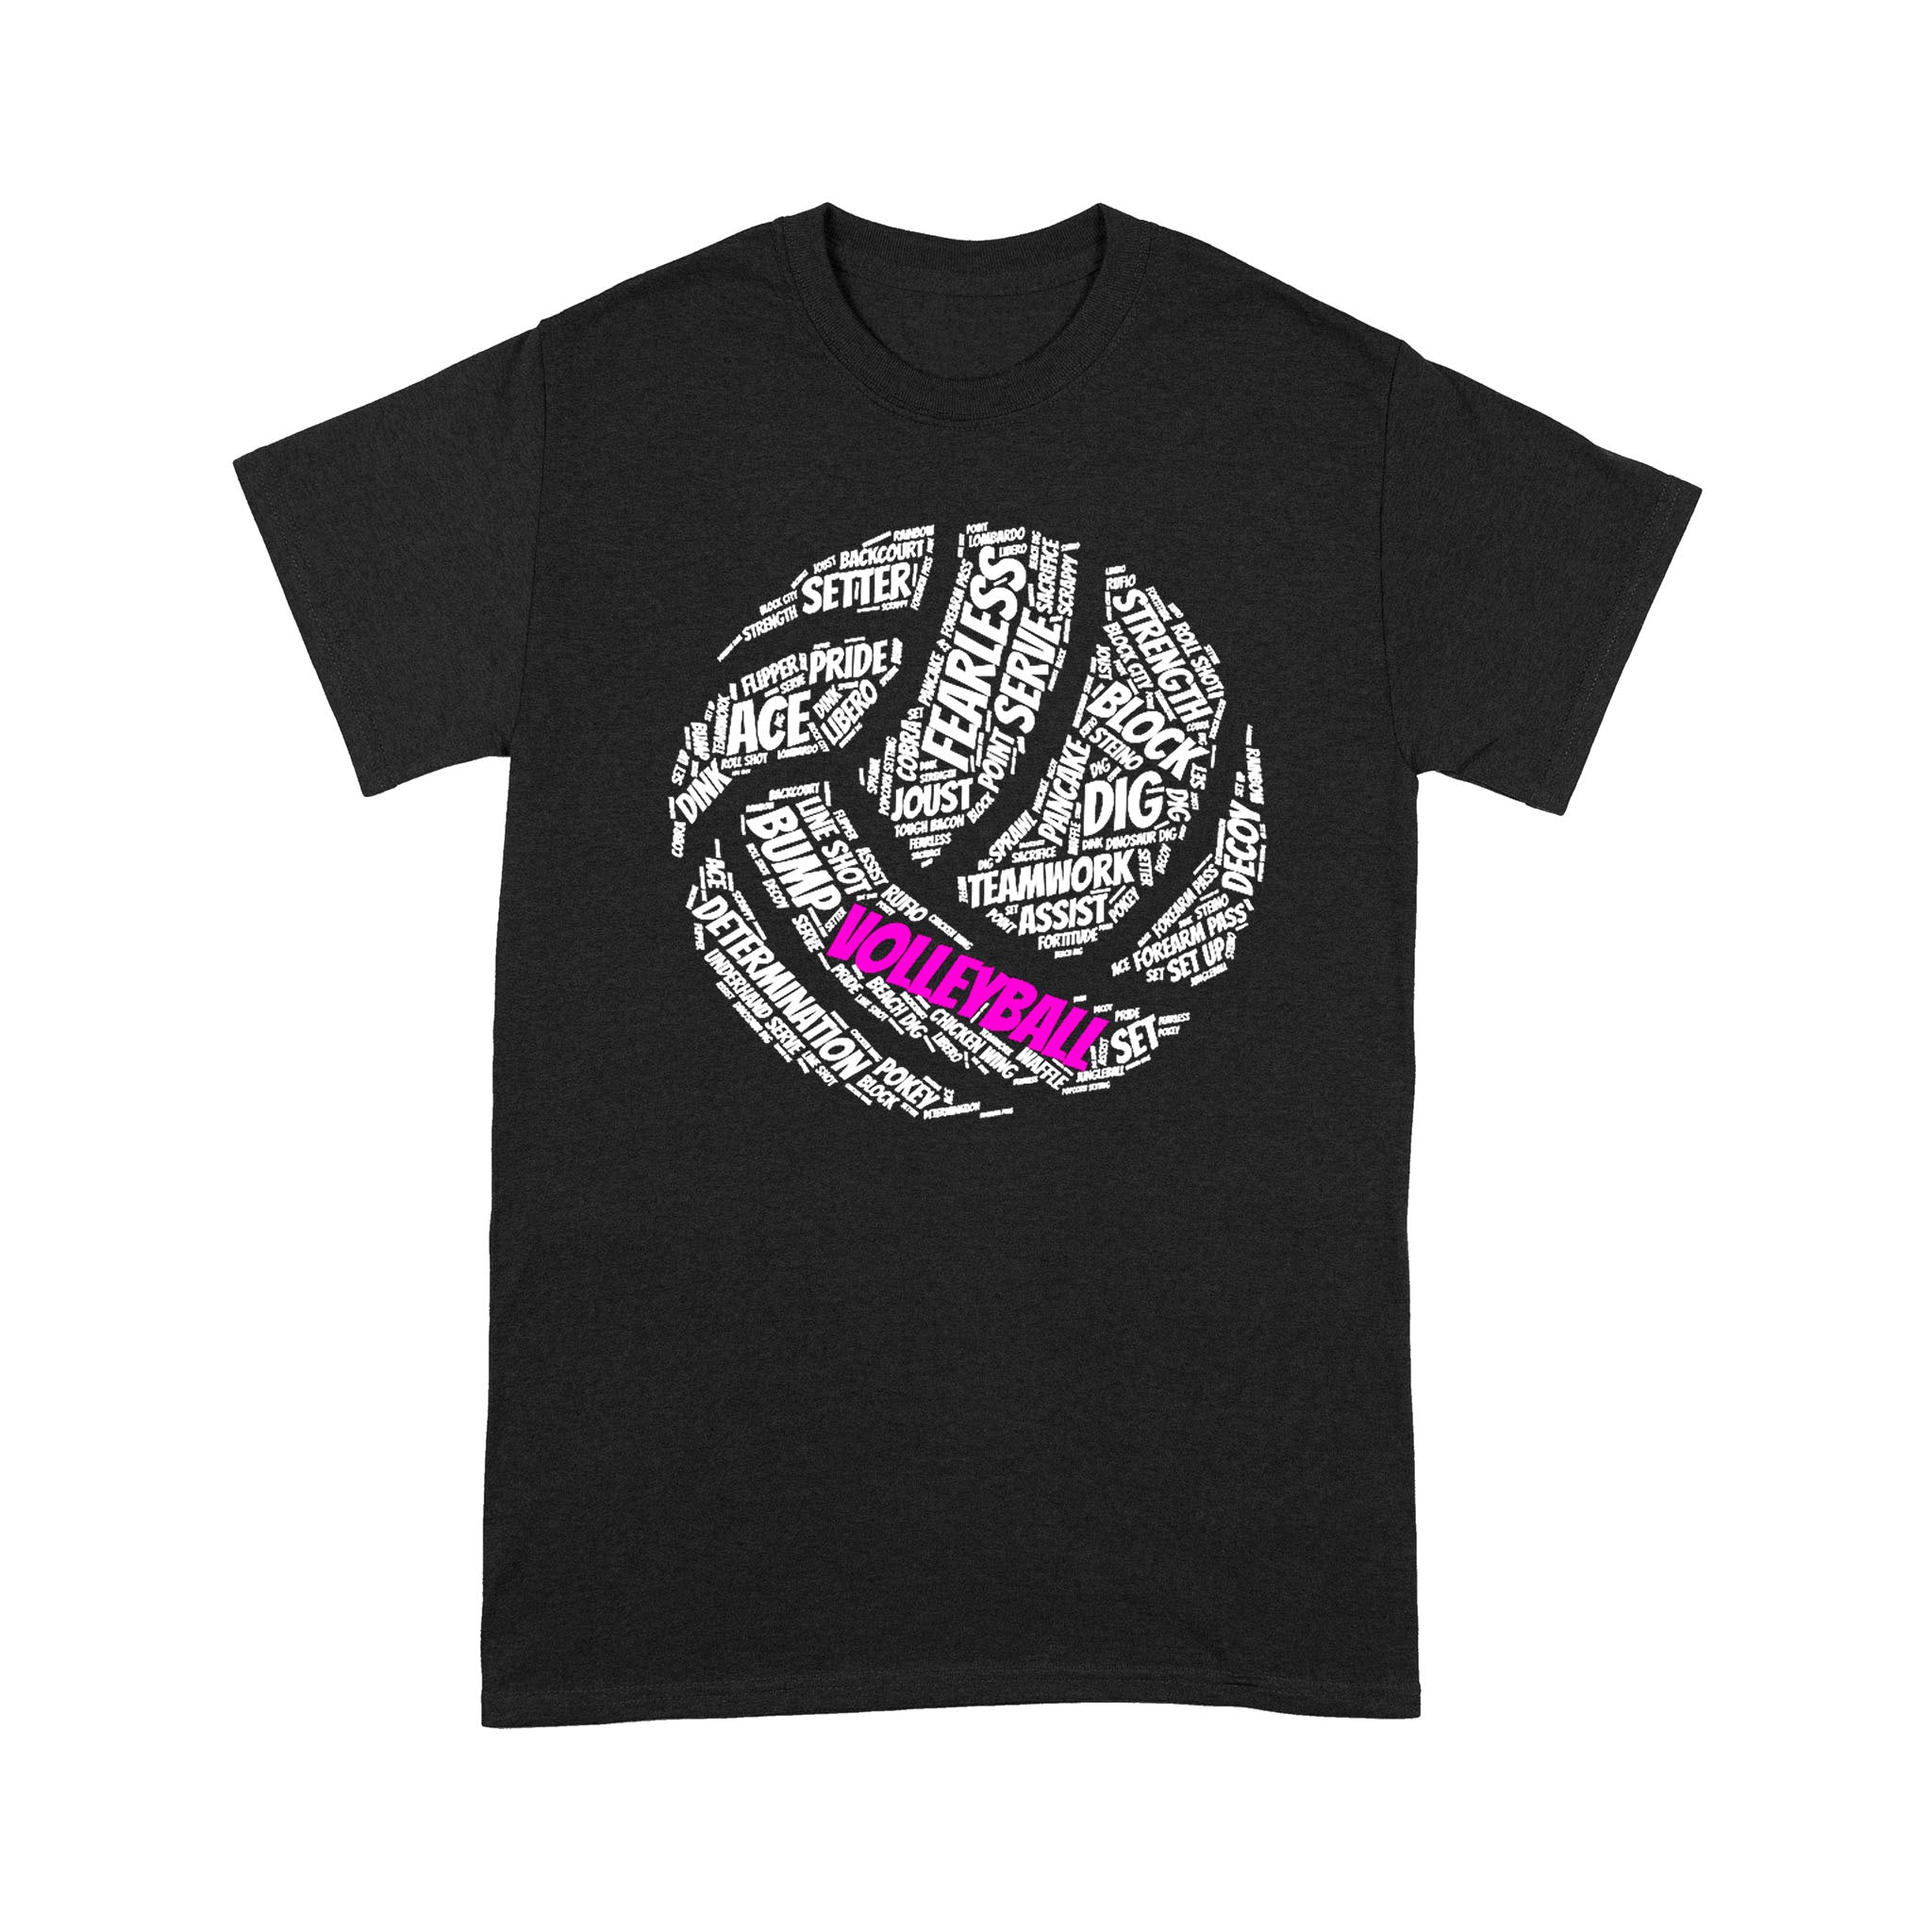 Kids Volleyball Apparel - Standard T-shirt